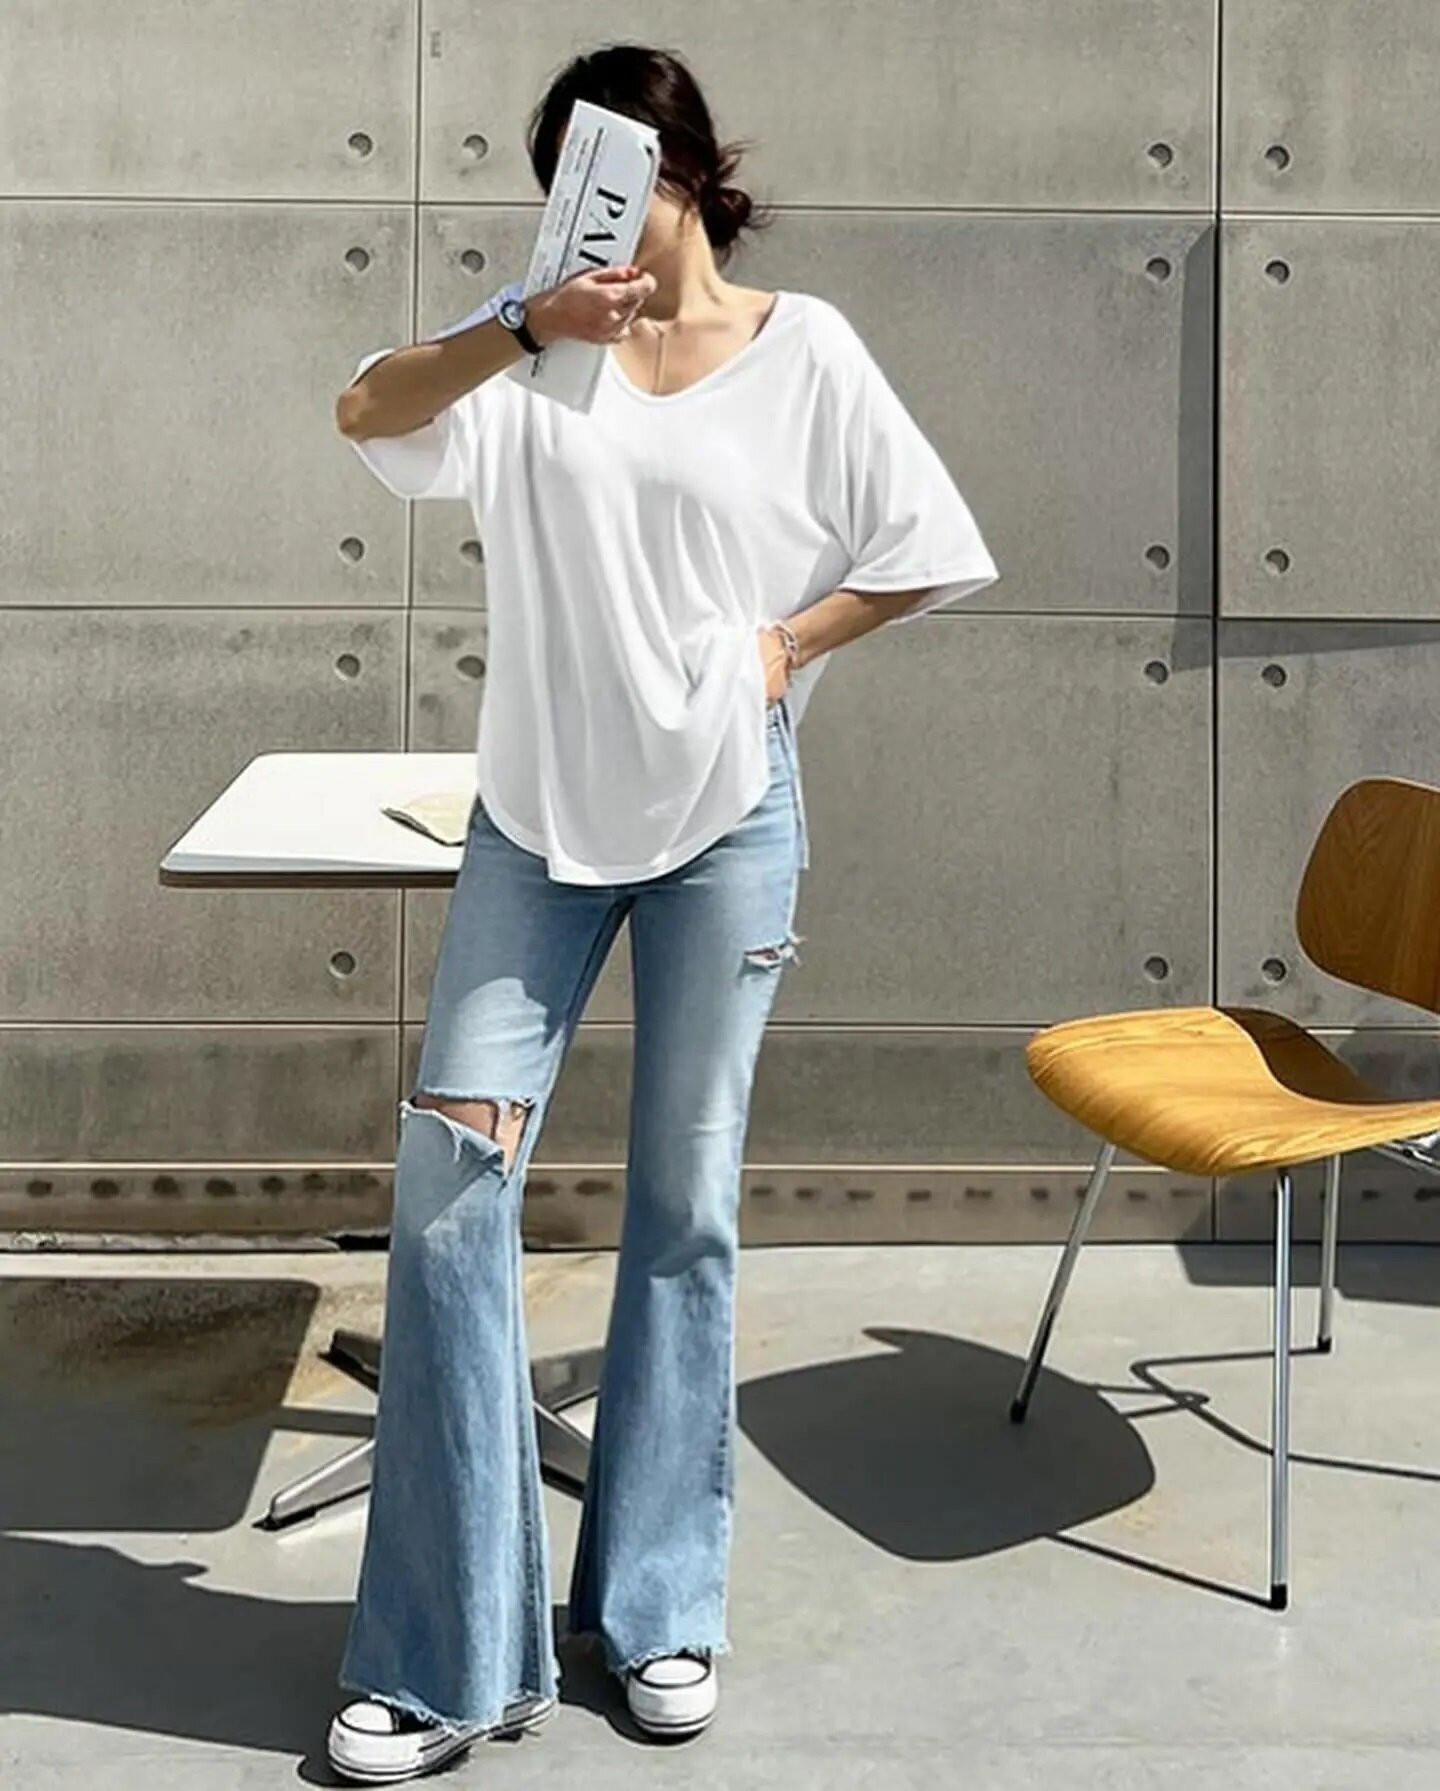 Quần jeans ống loe với áo thun trắng dáng thụng đem lại vẻ đẹp nữ tính, trẻ trung.